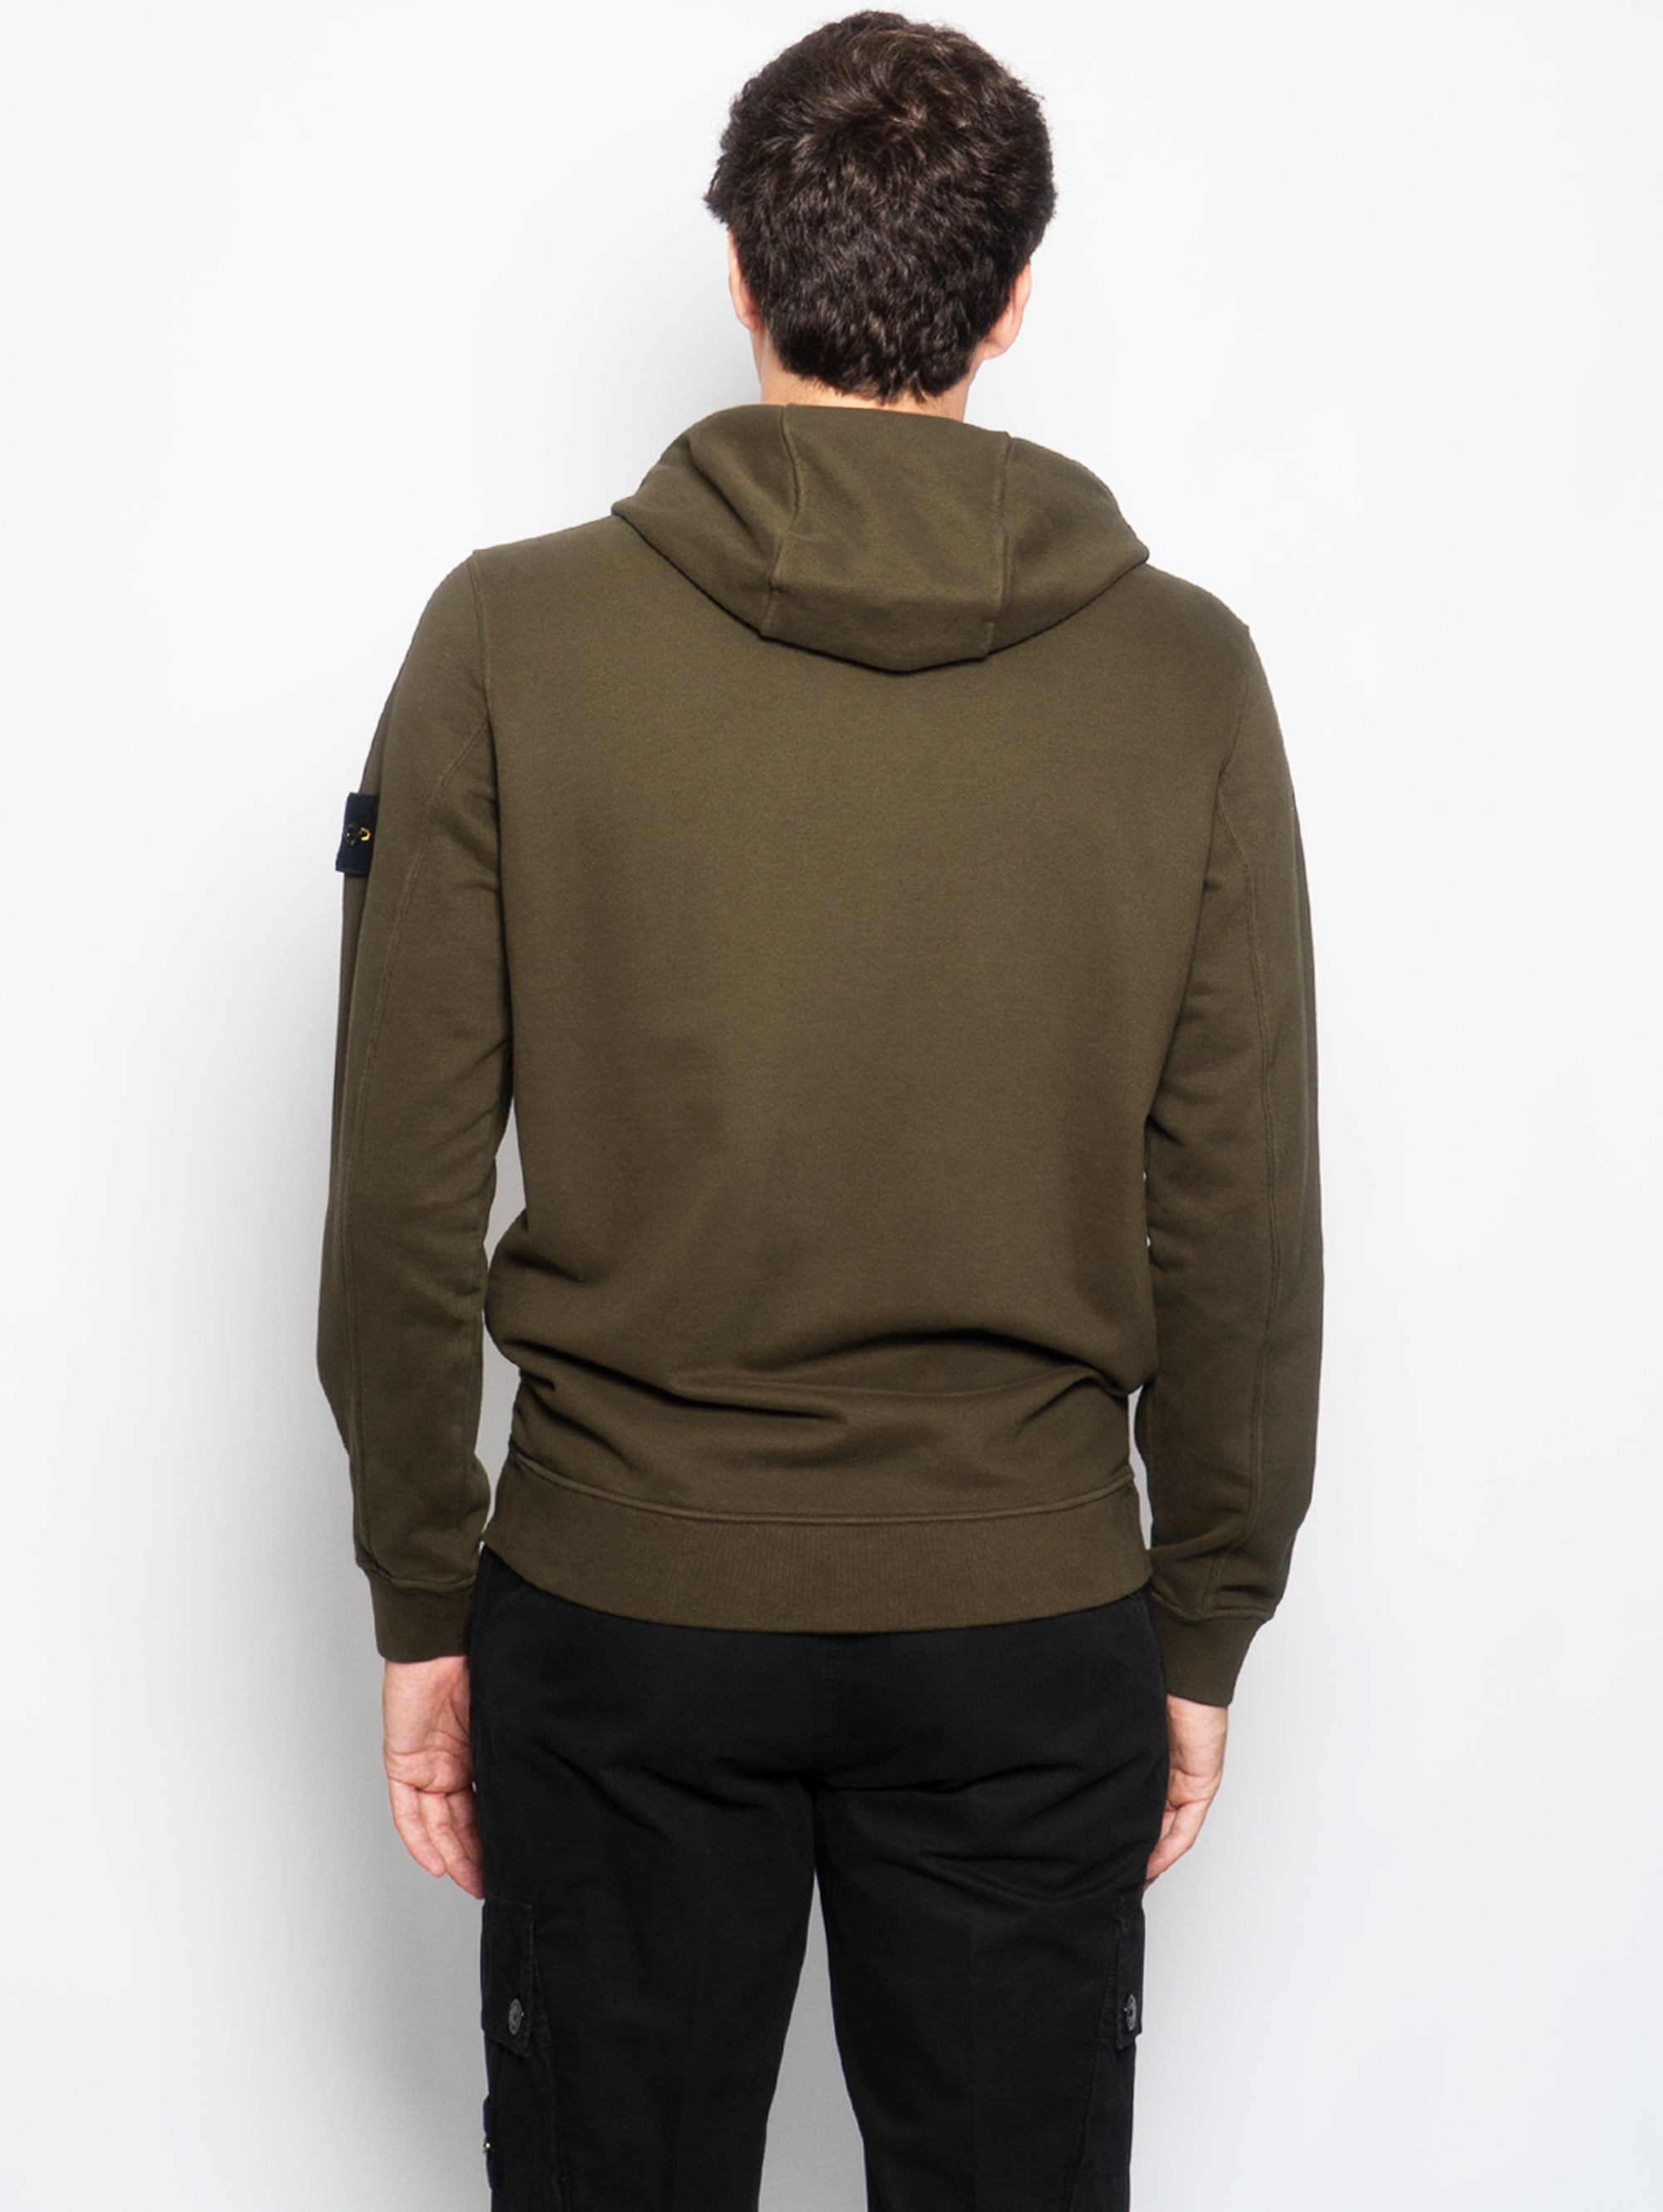 Sweatshirt mit Reißverschluss und olivfarbener Kapuze